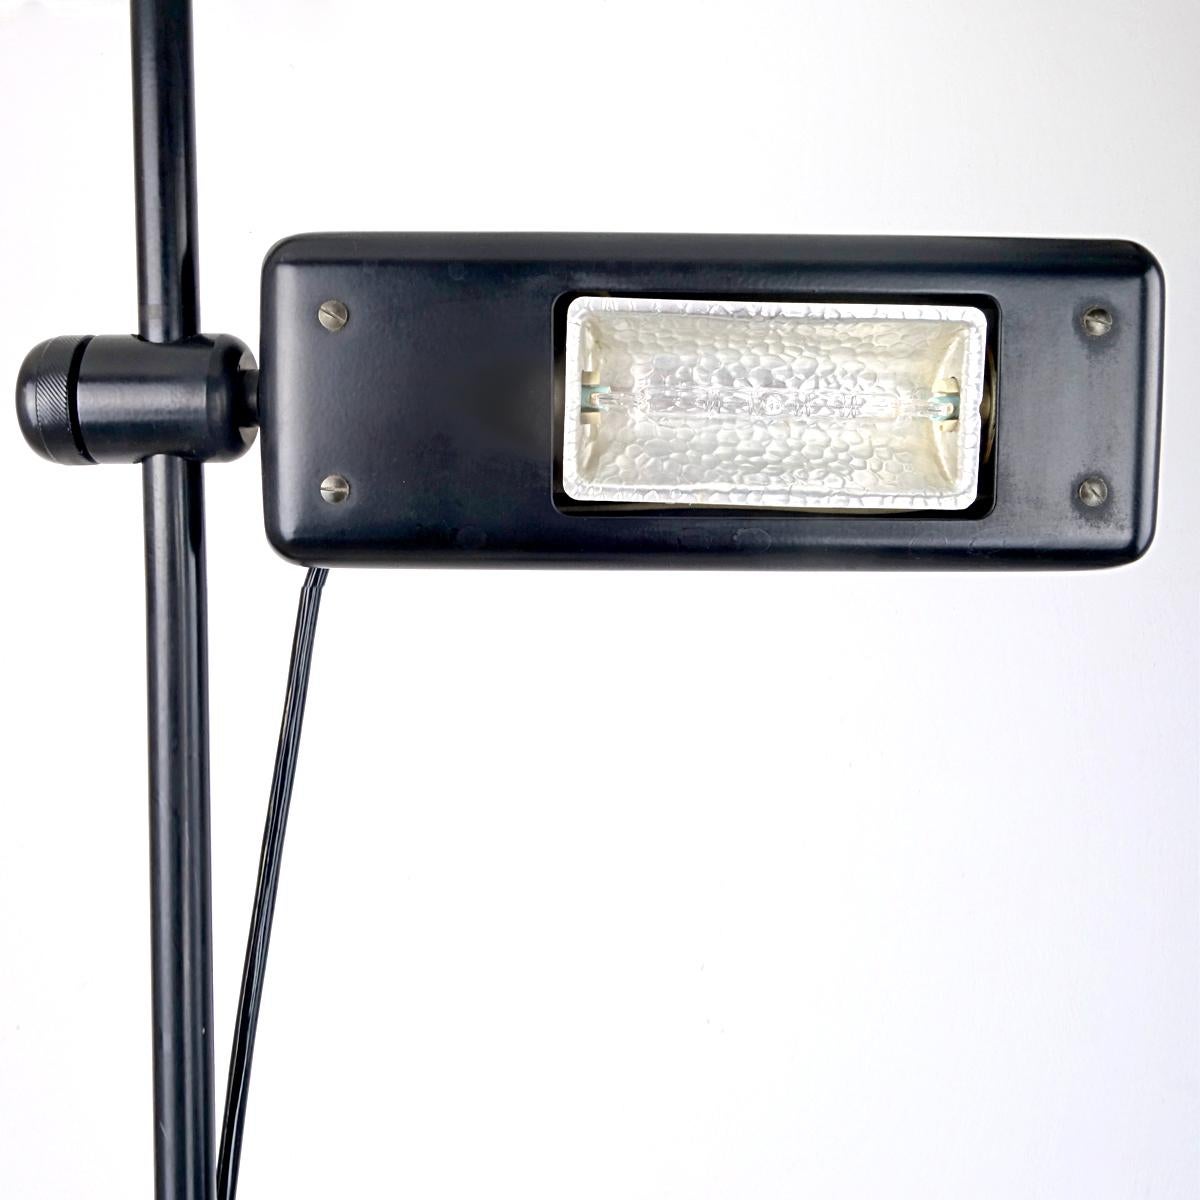 Ce lampadaire a été conçu par Gianfranco Frattini pour Relco. Elle peut être utilisée à la fois comme éclairage d'appoint et comme liseuse. Avec gradateur intégré. N'est plus en production.